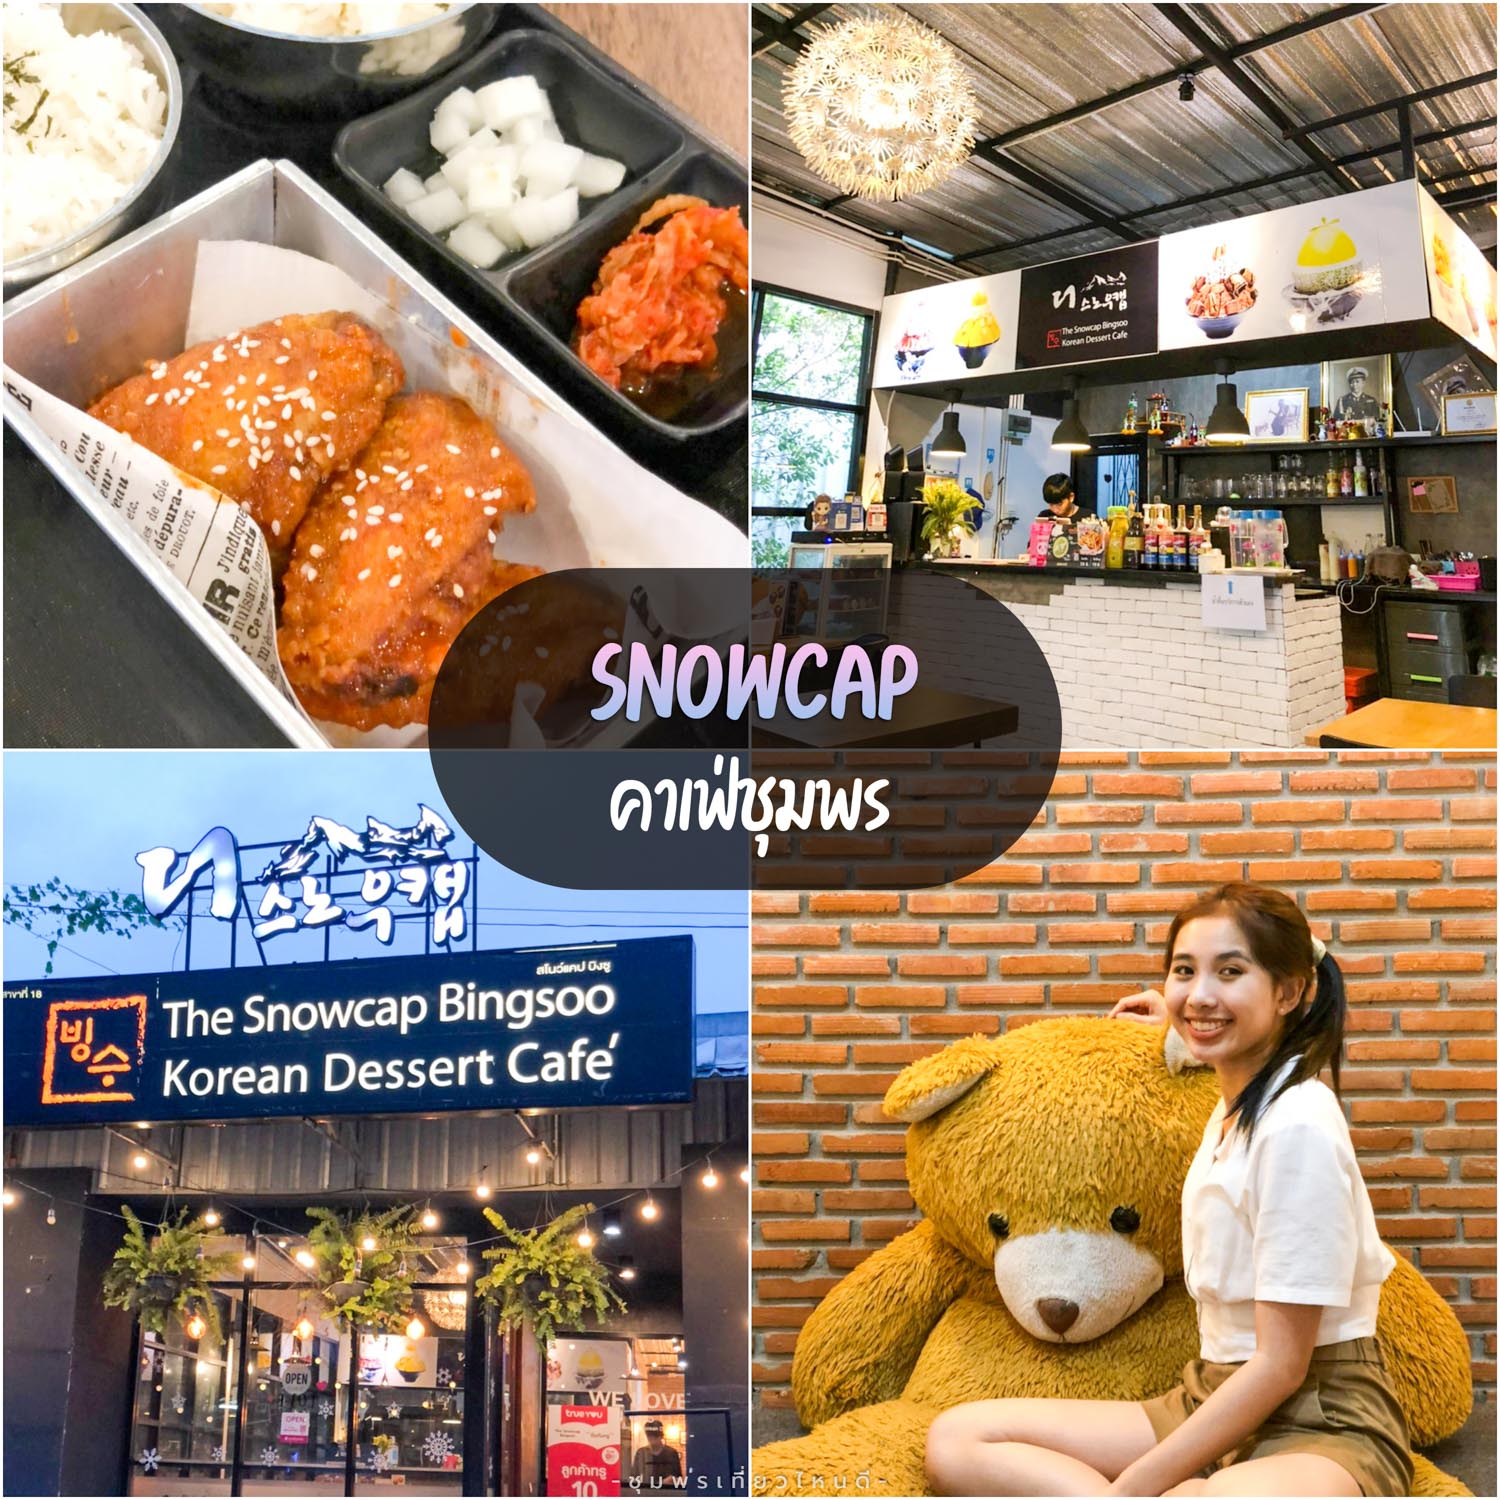 Snowcap Bingsoo ชุมพร คาเฟ่ สายเกาหลีต้องห้ามพลาดกับอาหารเกาหลีอร่อยๆ บรรยากาศดี